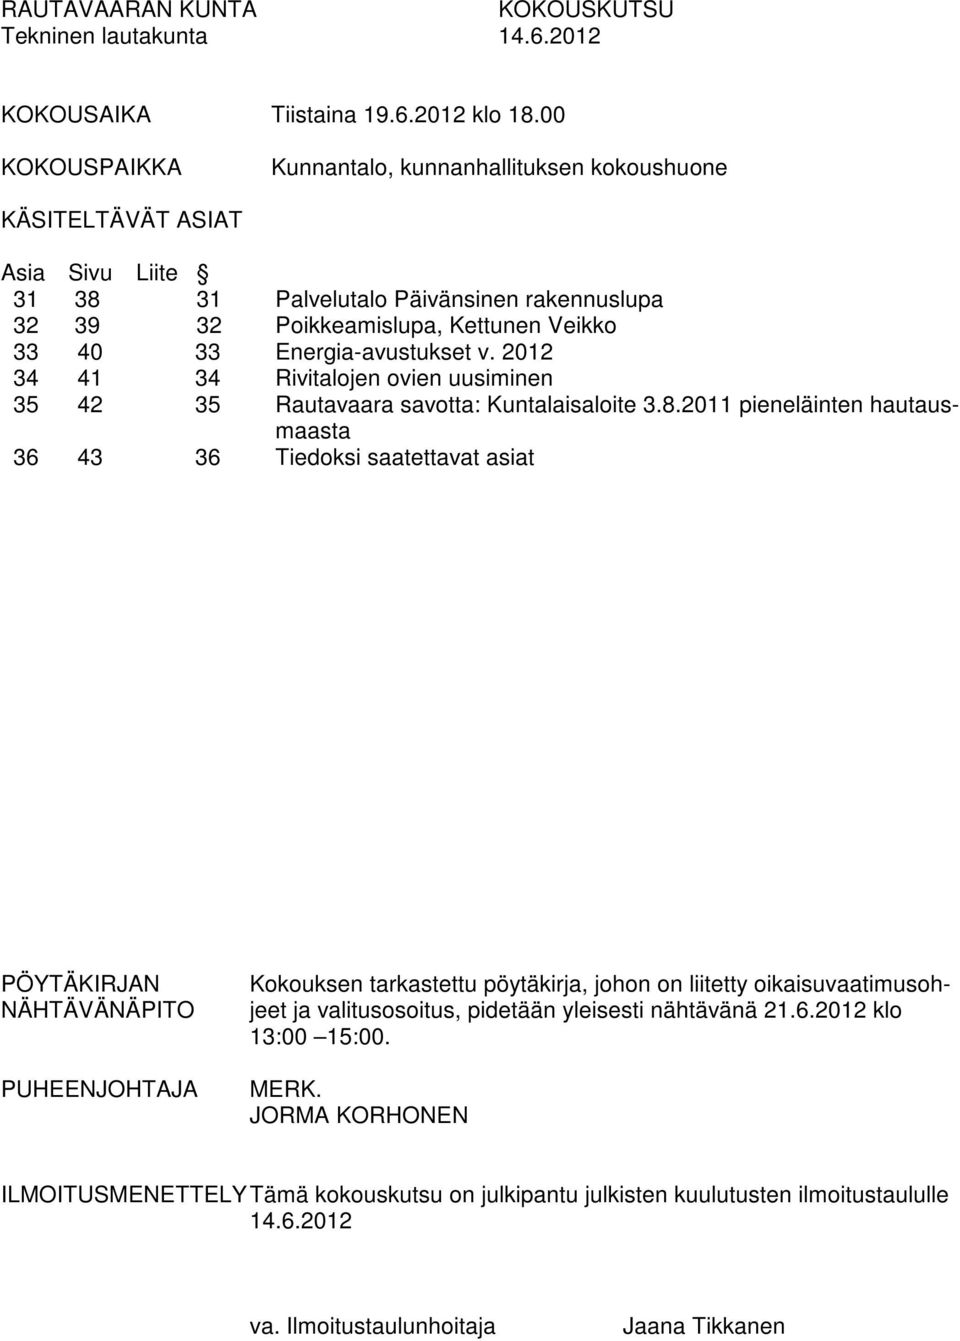 Energia-avustukset v. 2012 34 41 34 Rivitalojen ovien uusiminen 35 42 35 Rautavaara savotta: Kuntalaisaloite 3.8.